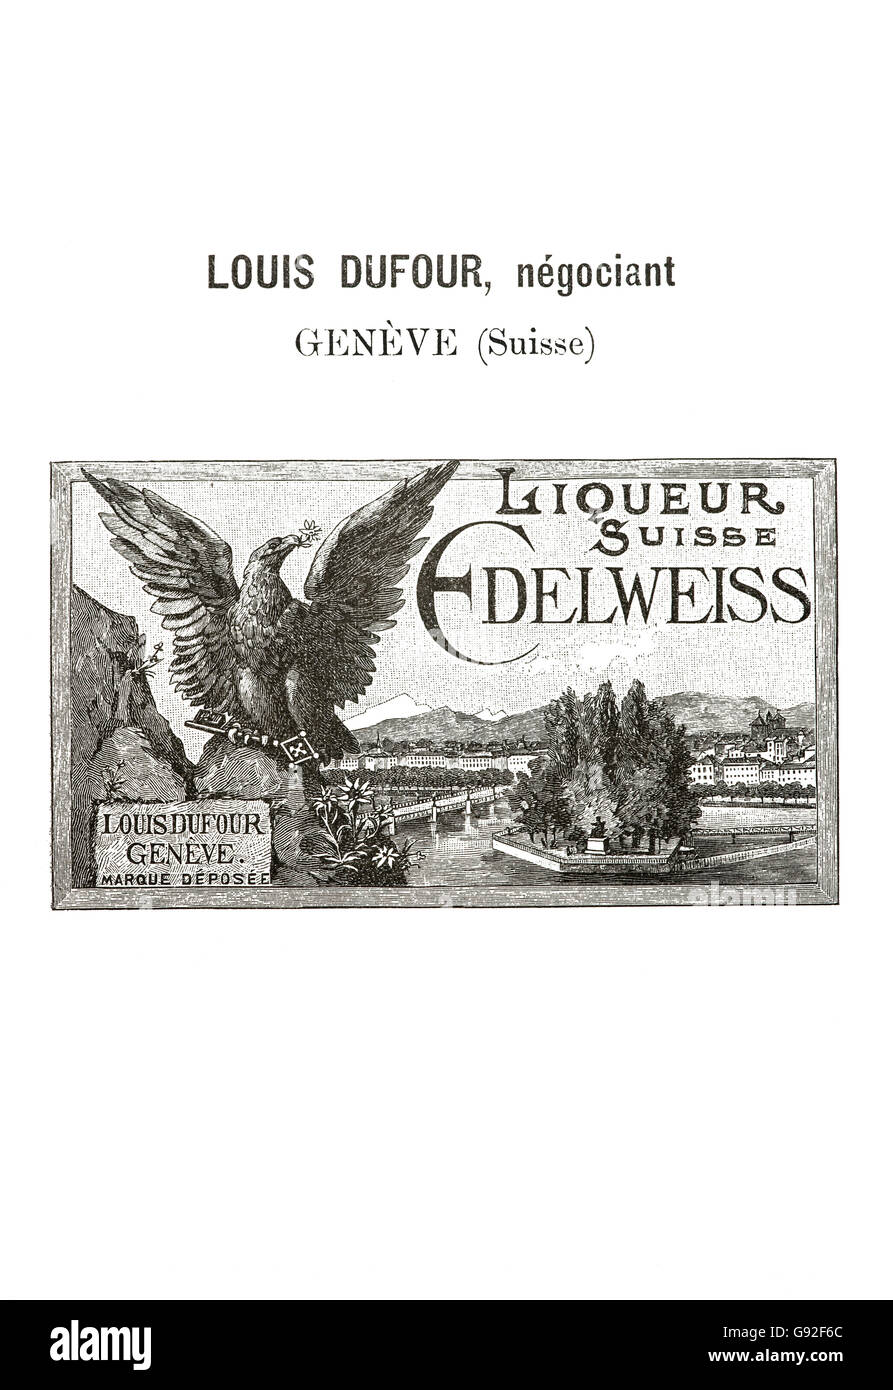 Marque Historique de la liqueur d'Edelweiss Suisse commercialisé par le détaillant Genève Louis Dufour à partir de 1894, Suisse Banque D'Images